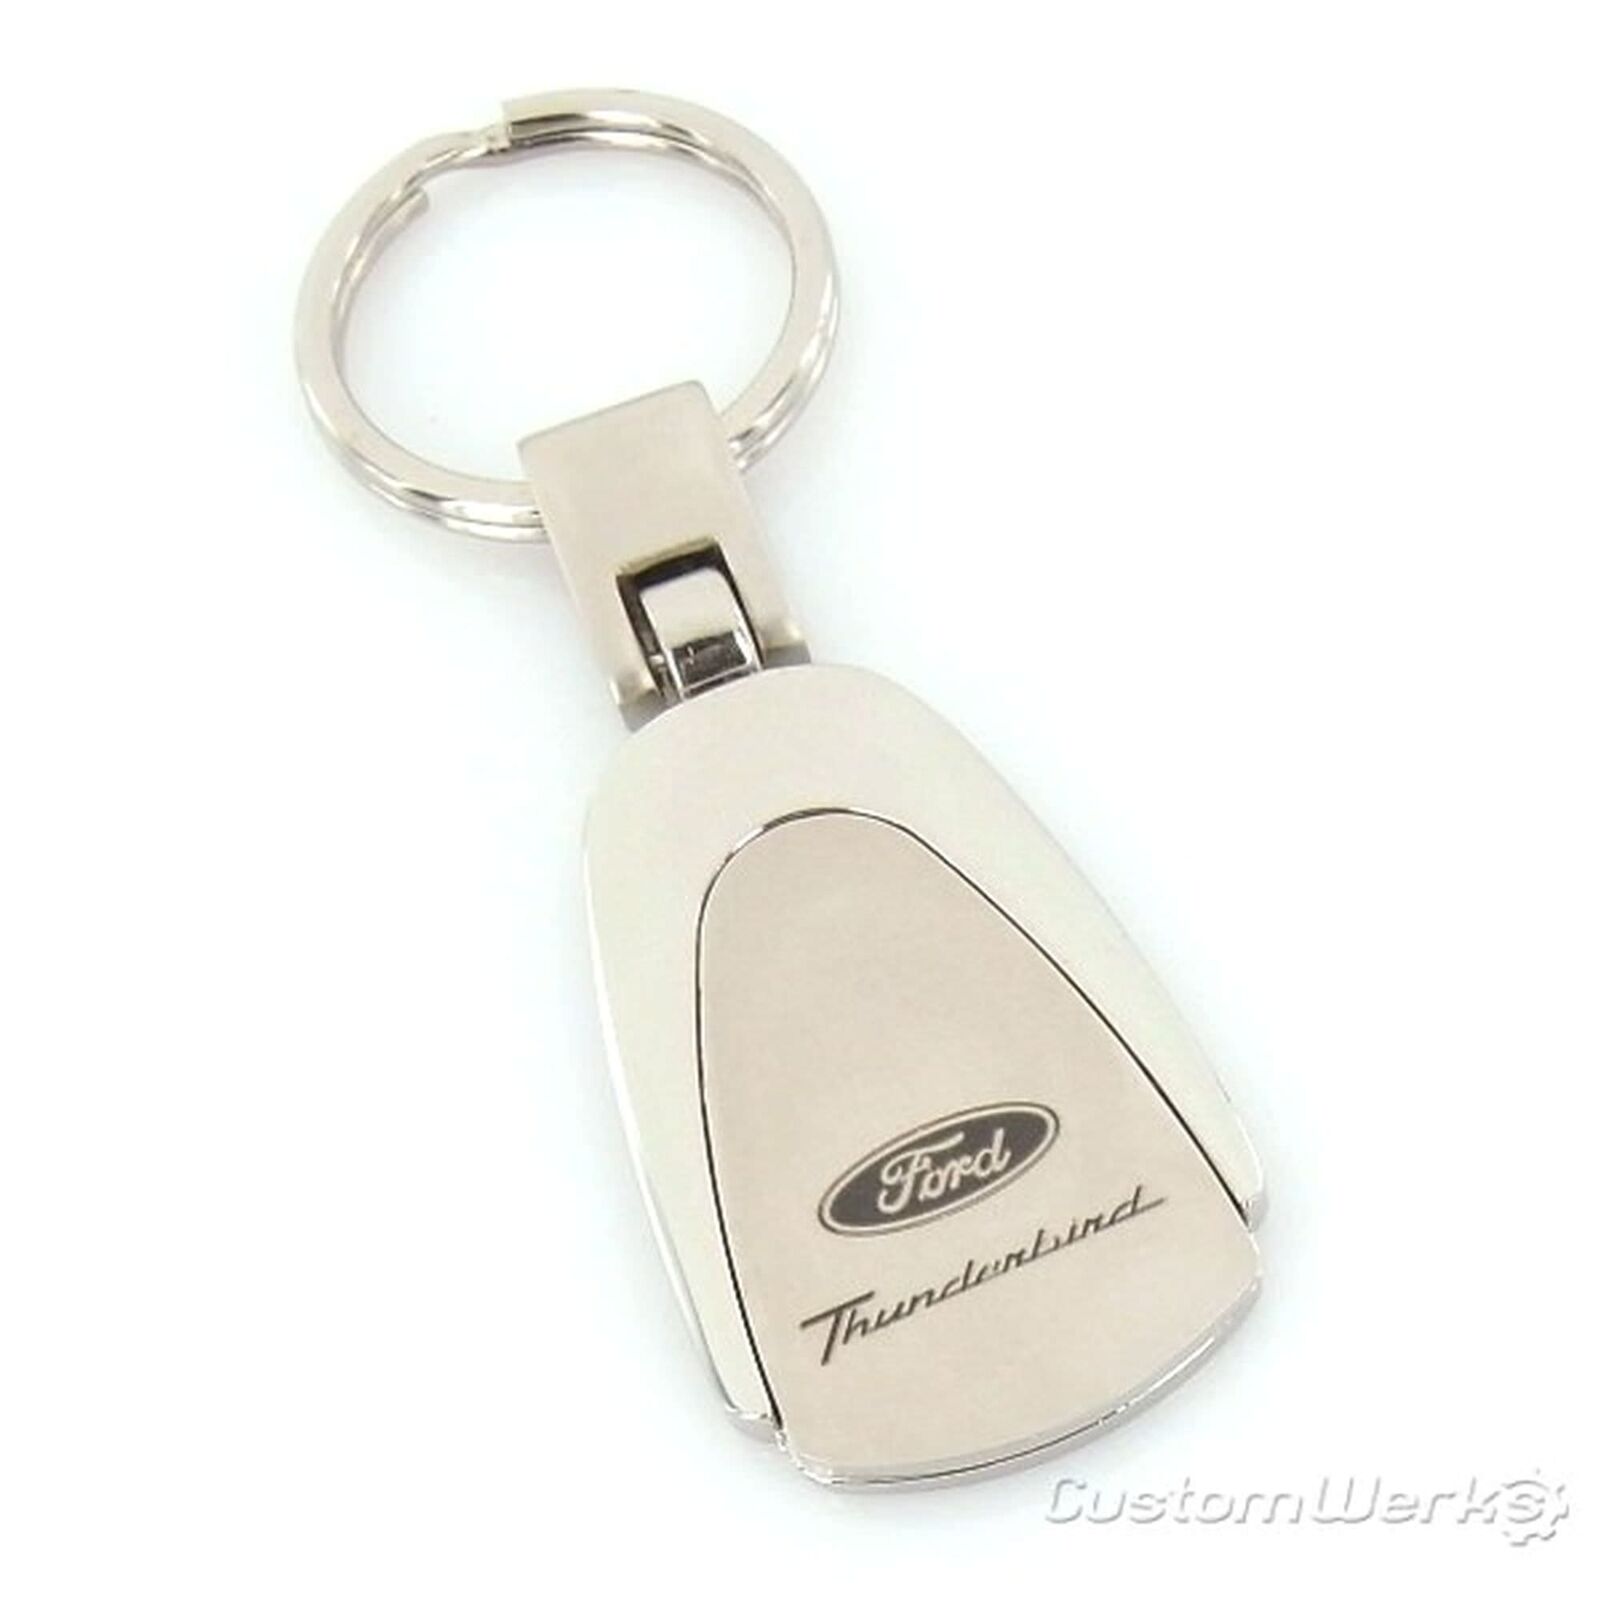 Ford Thunderbird Tear Drop Keychain (Chrome)